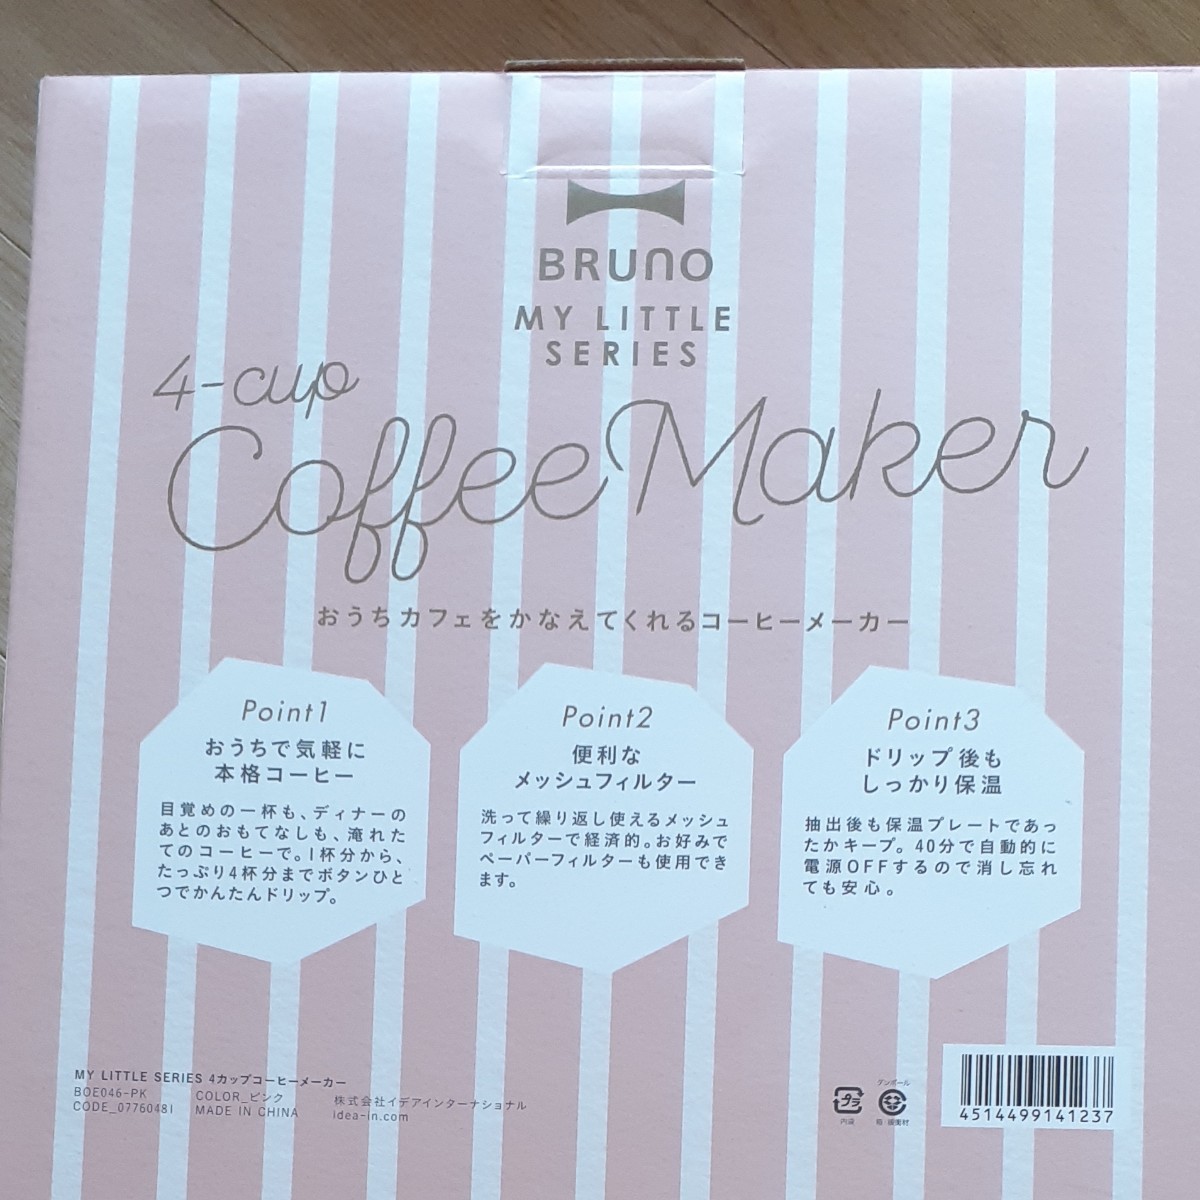 イデアインターナショナル BRUNO 4カップコーヒーメーカーBOE046-PK ピンク